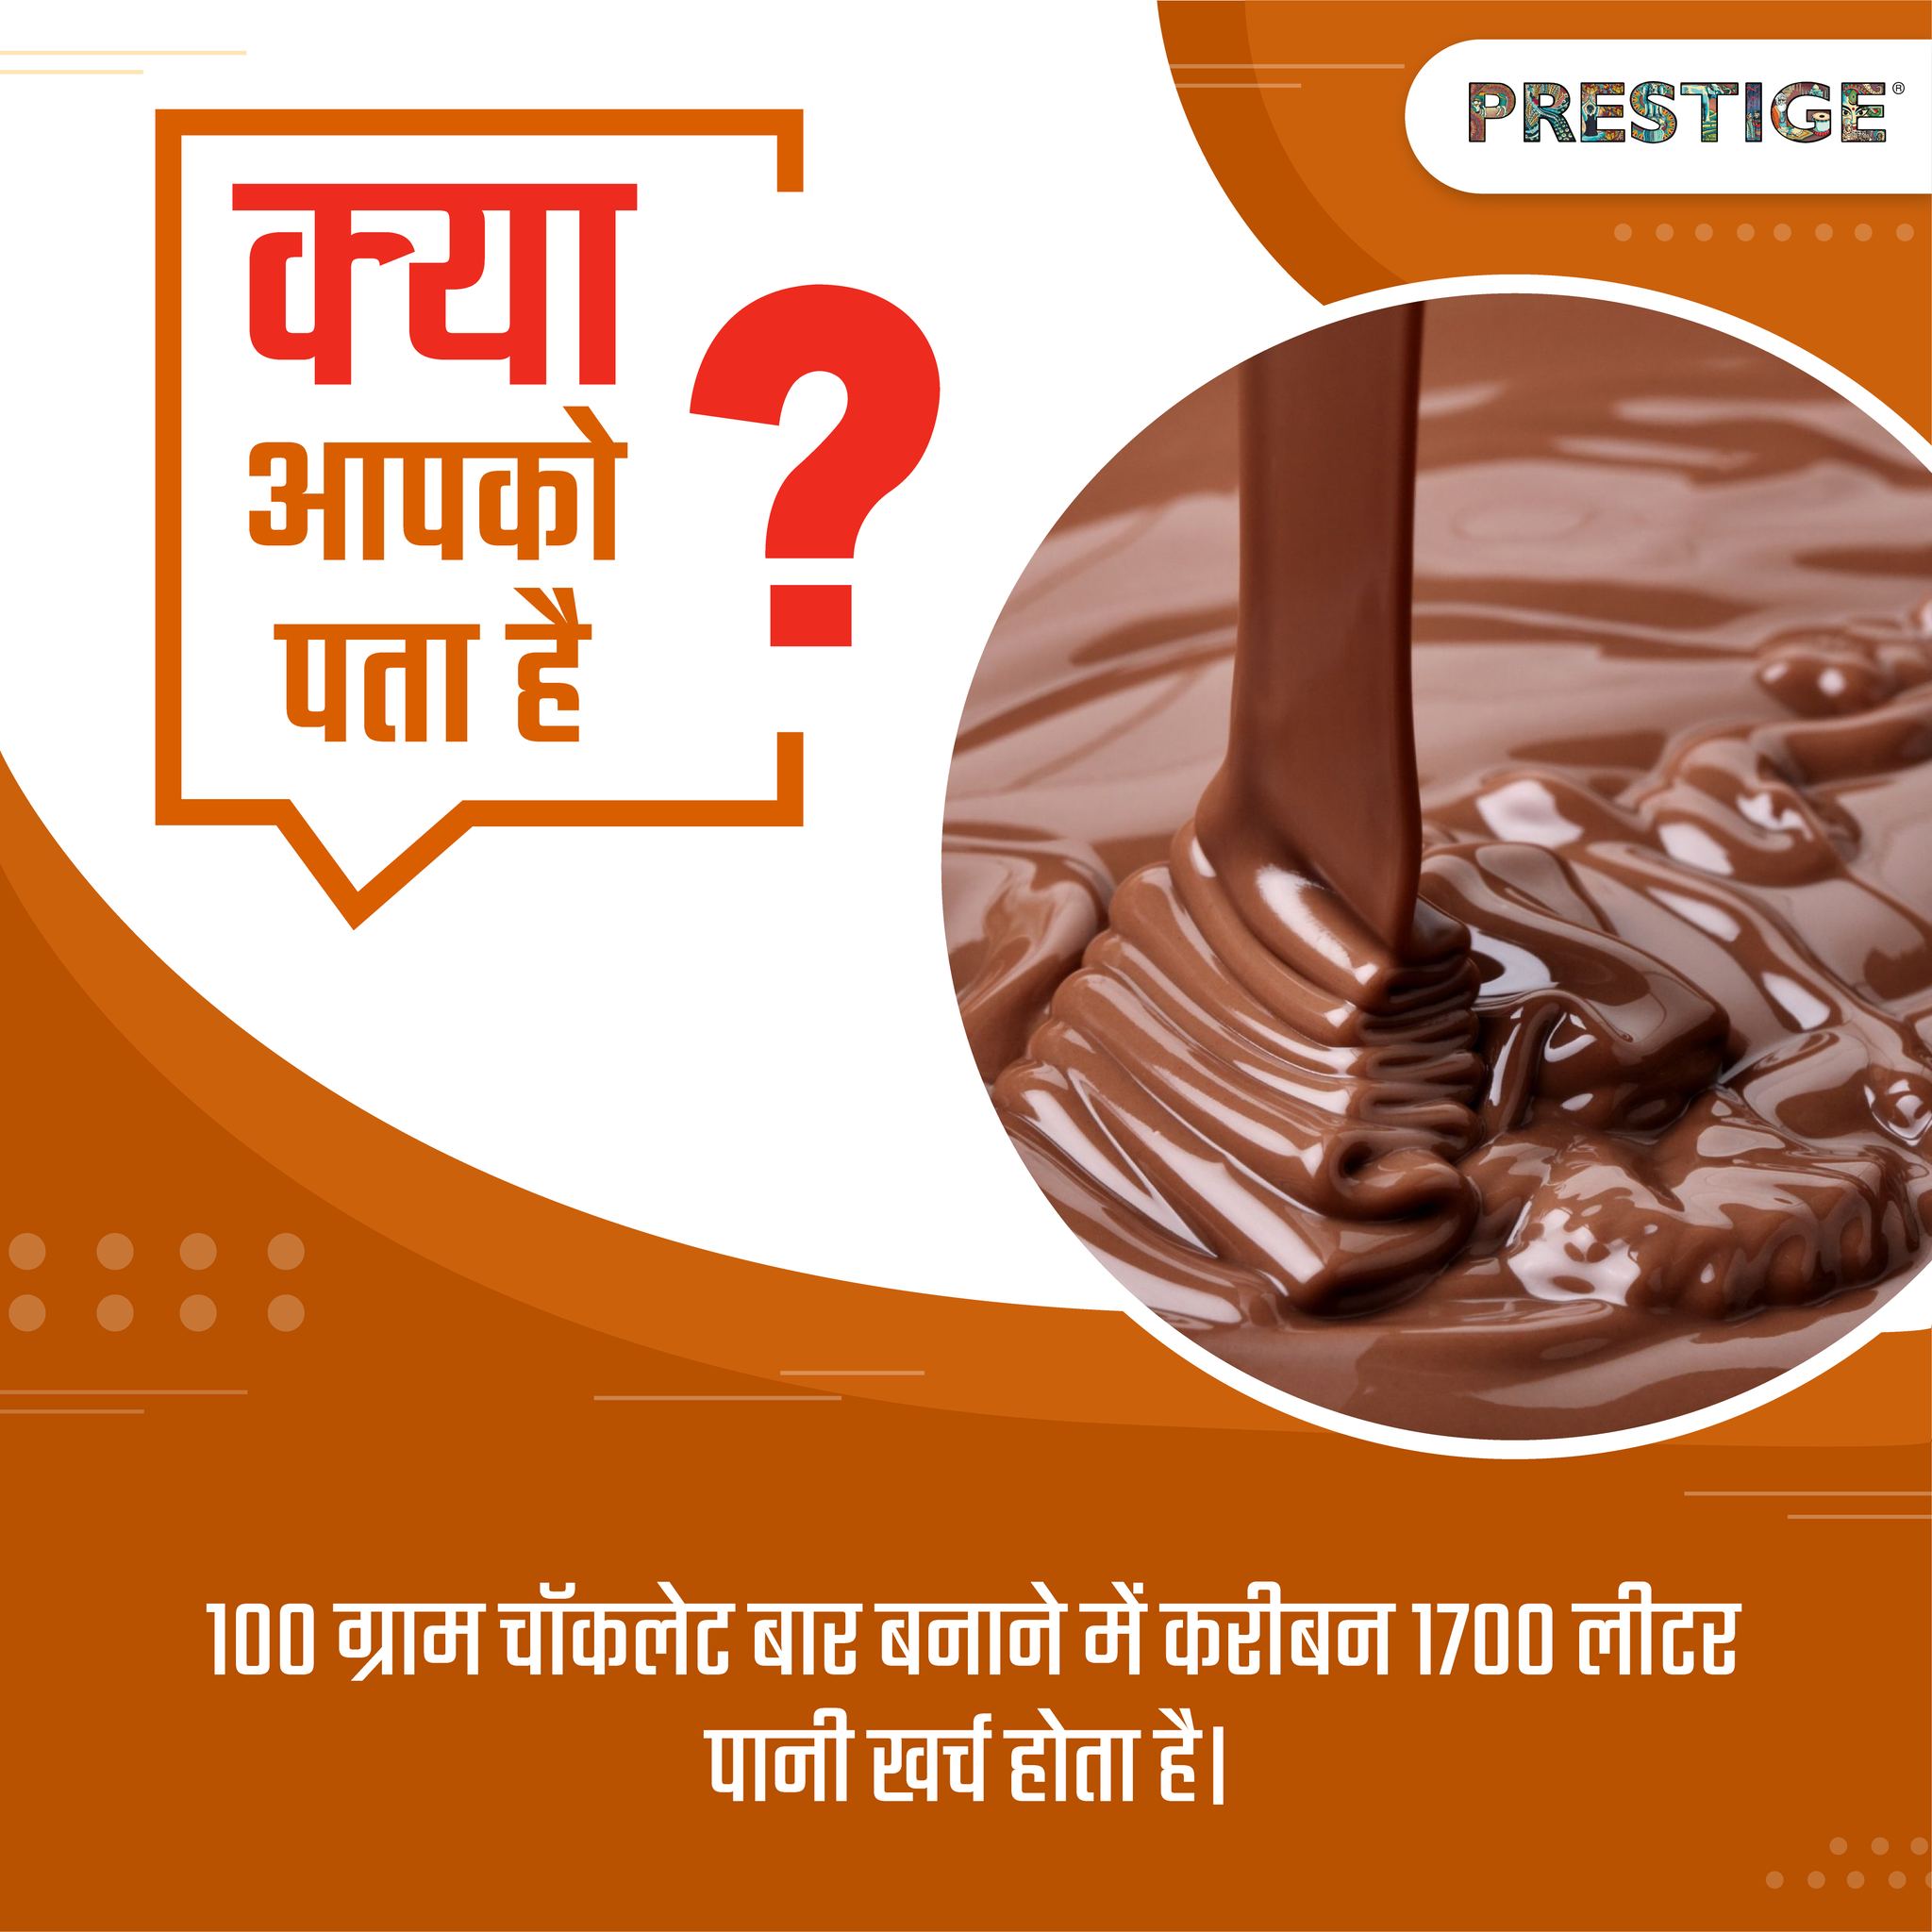 100 ग्राम चॉकलेट जो हम खाते हैं उसे विभिन्न चरणों में 1700 लीटर पानी का उपयोग करके बनाया जाता है।